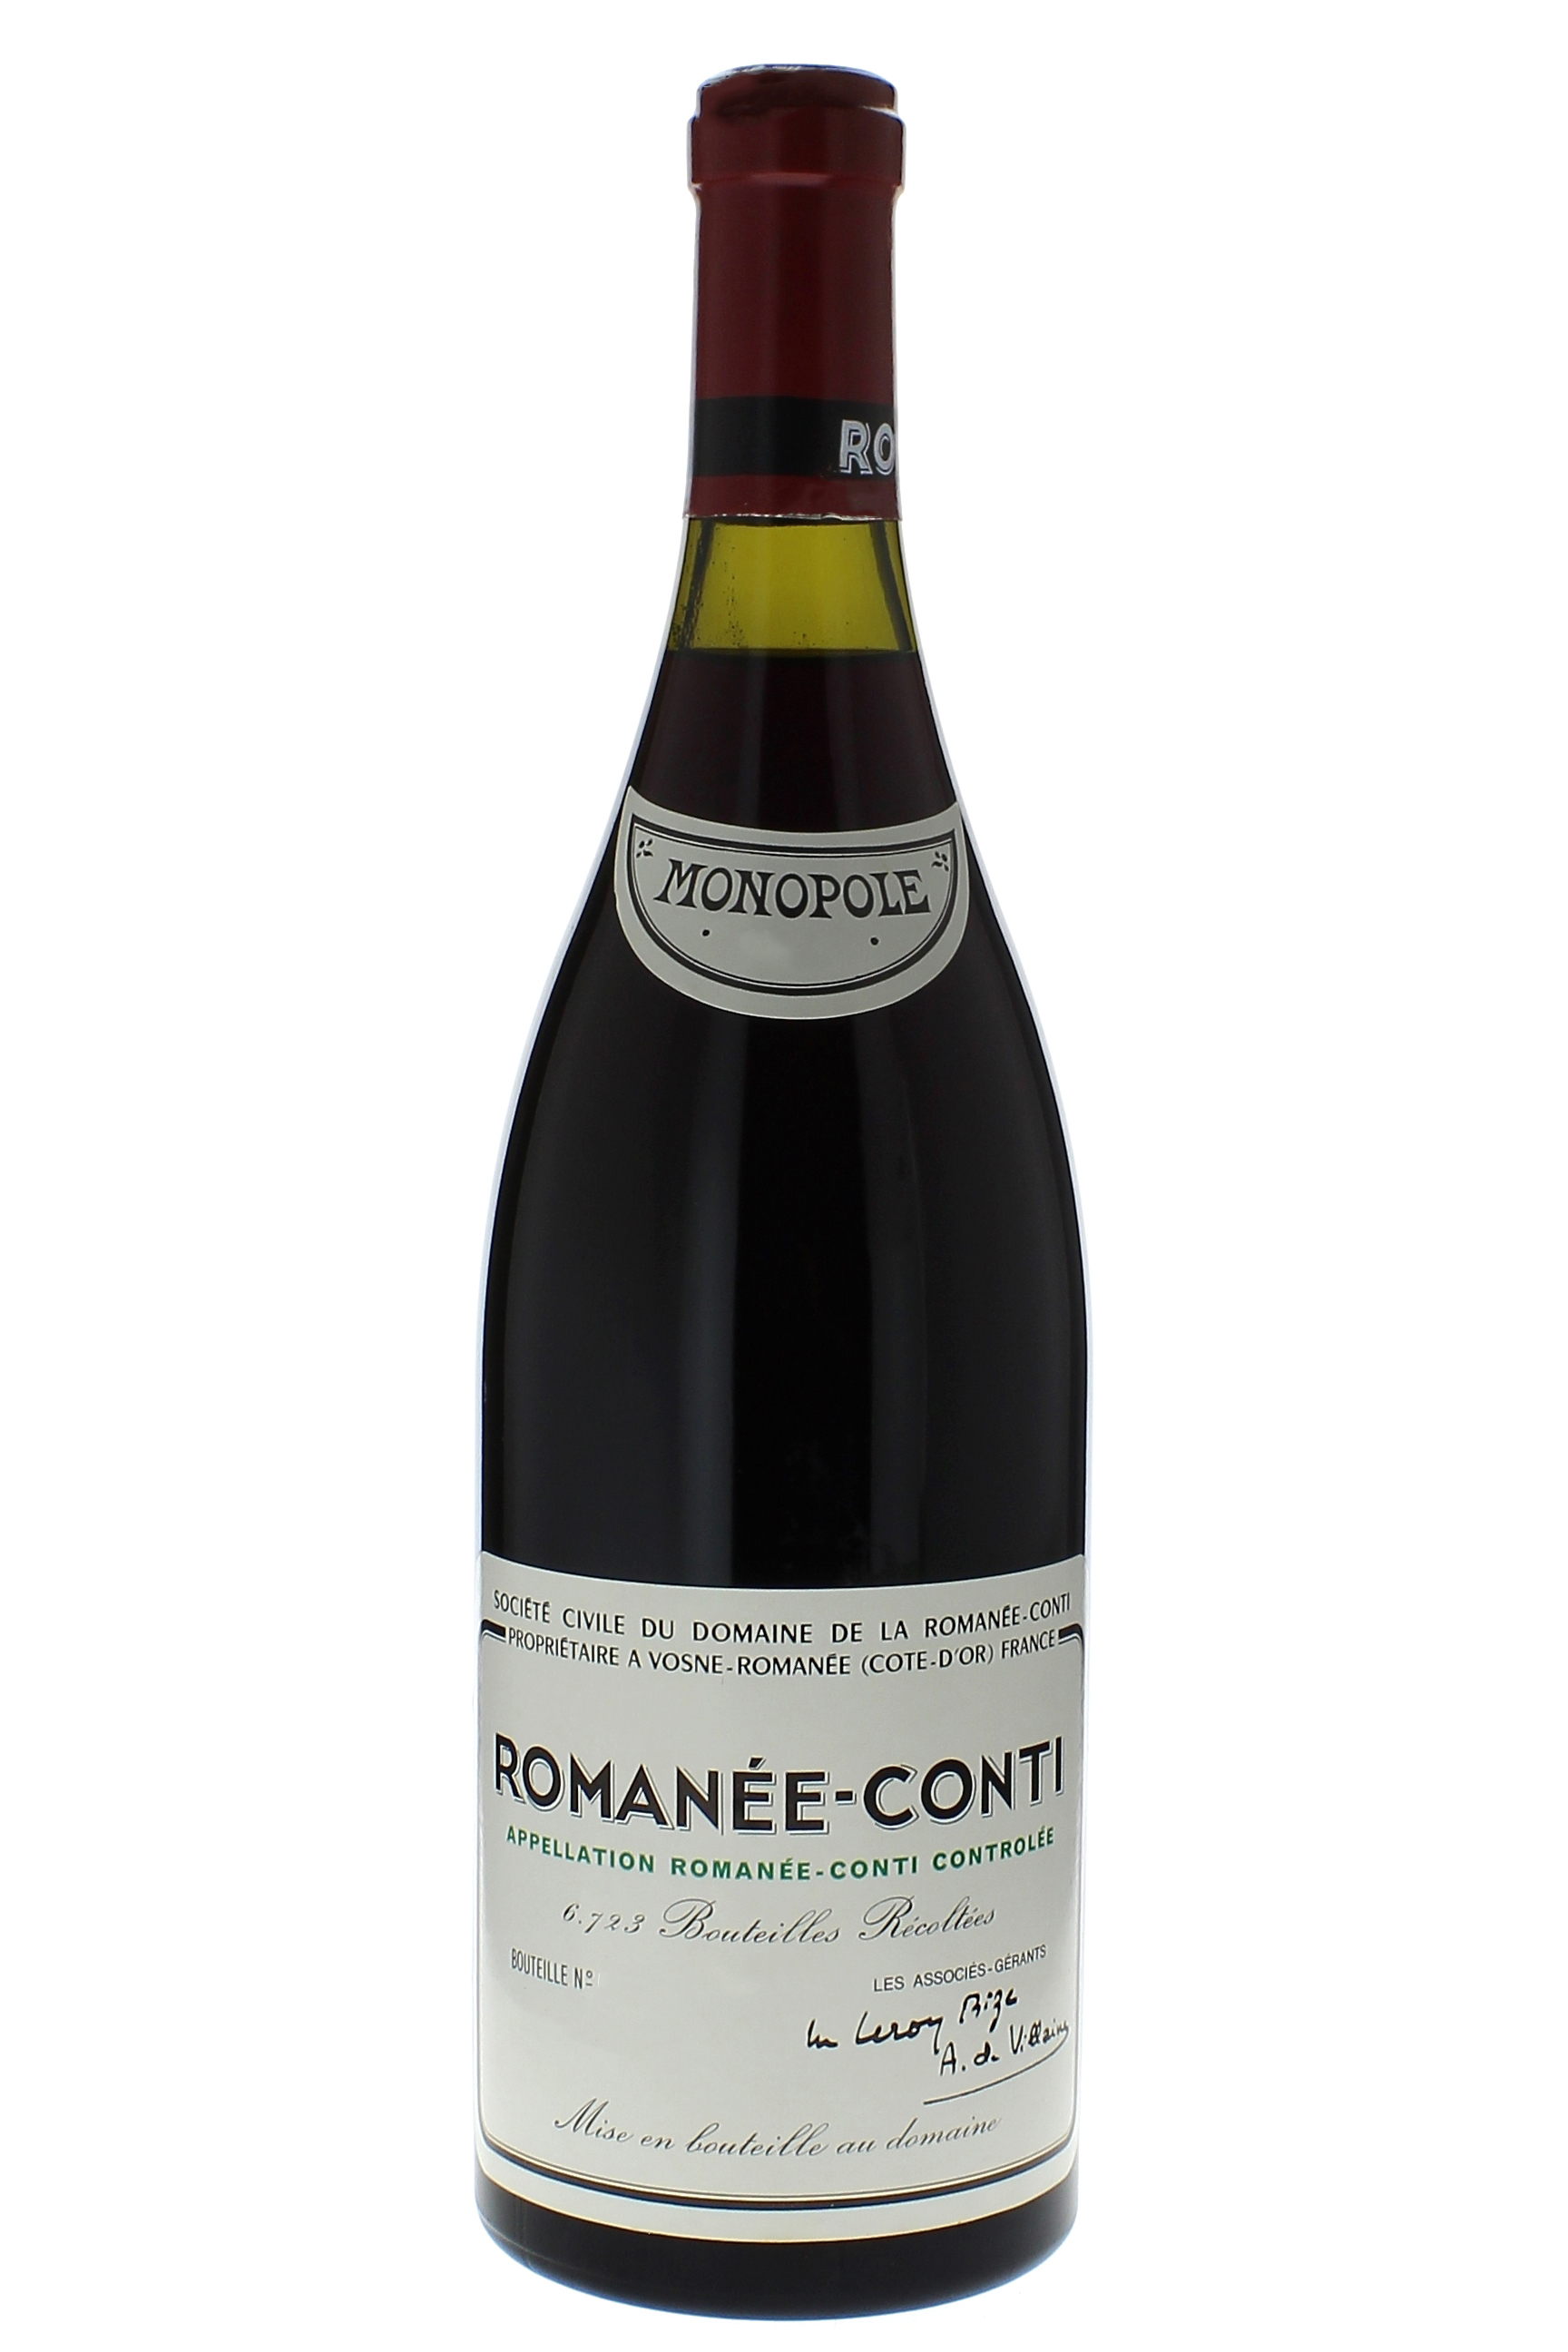 Romane conti grand cru 1987 Domaine ROMANEE CONTI, Bourgogne rouge